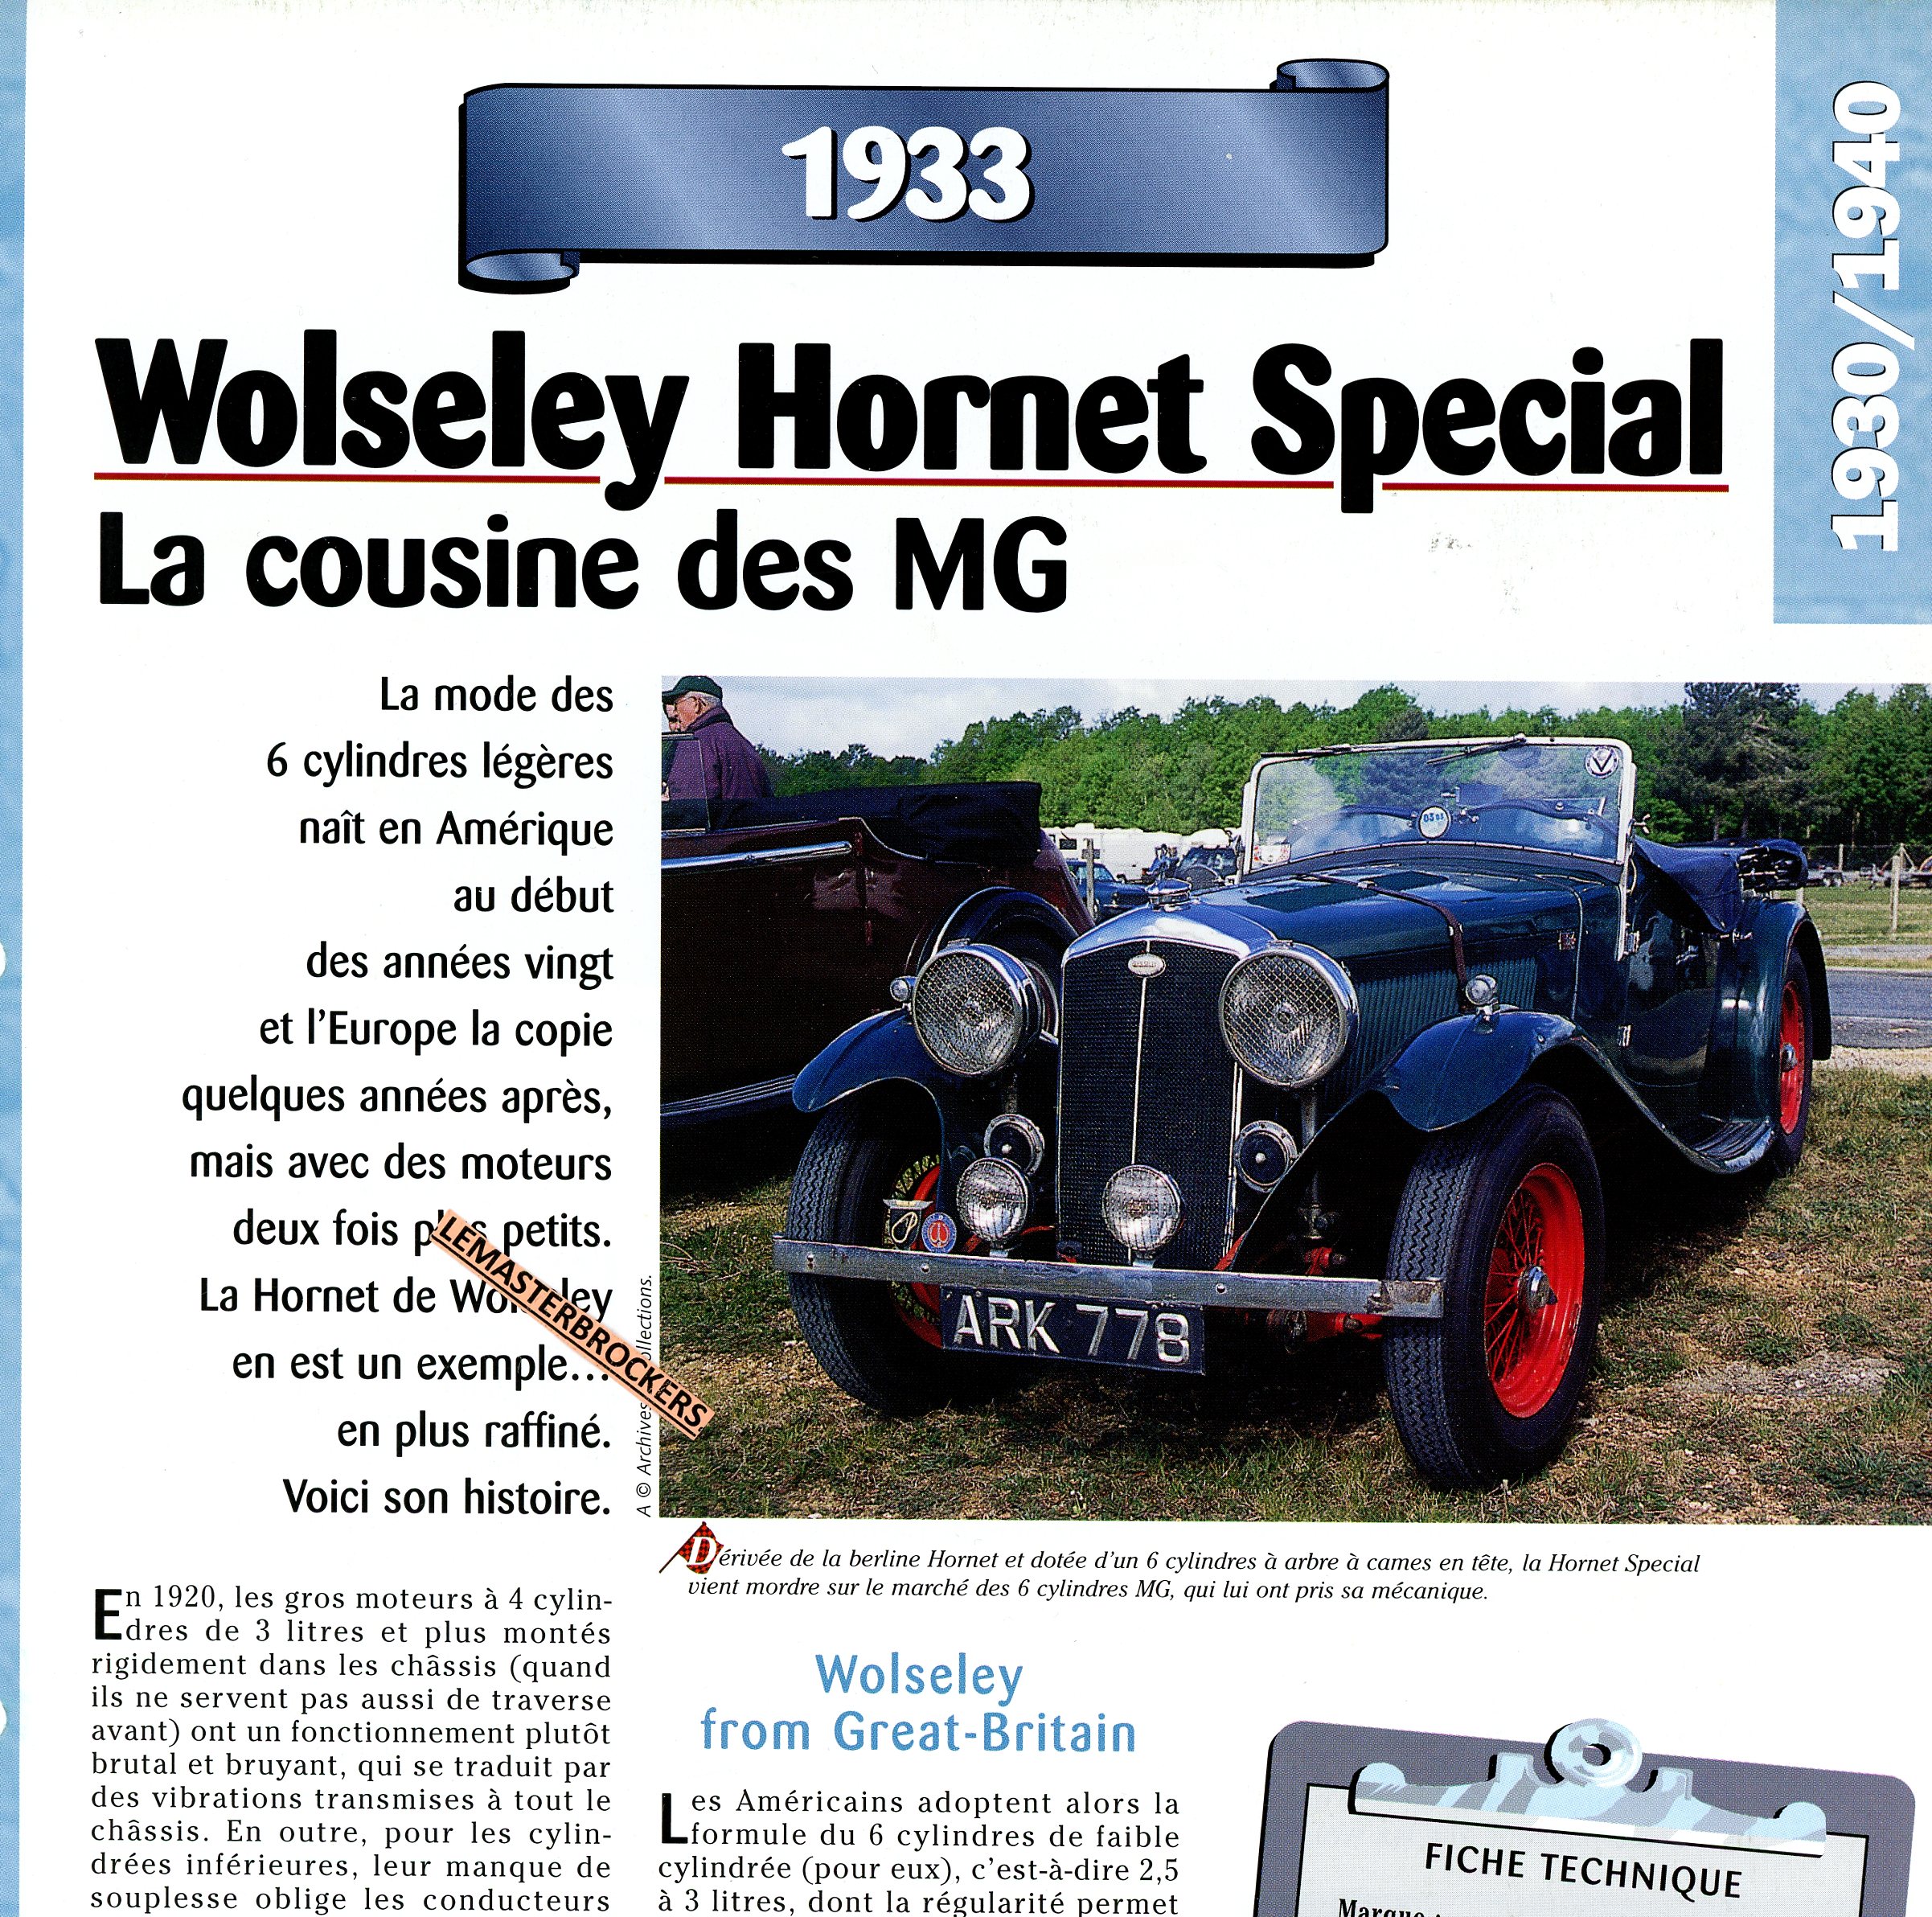 FICHE-TECHNIQUE-WOLSELEY-HORNET-SPECIAL-1933-FICHE-AUTO-LEMASTERBROCKERS